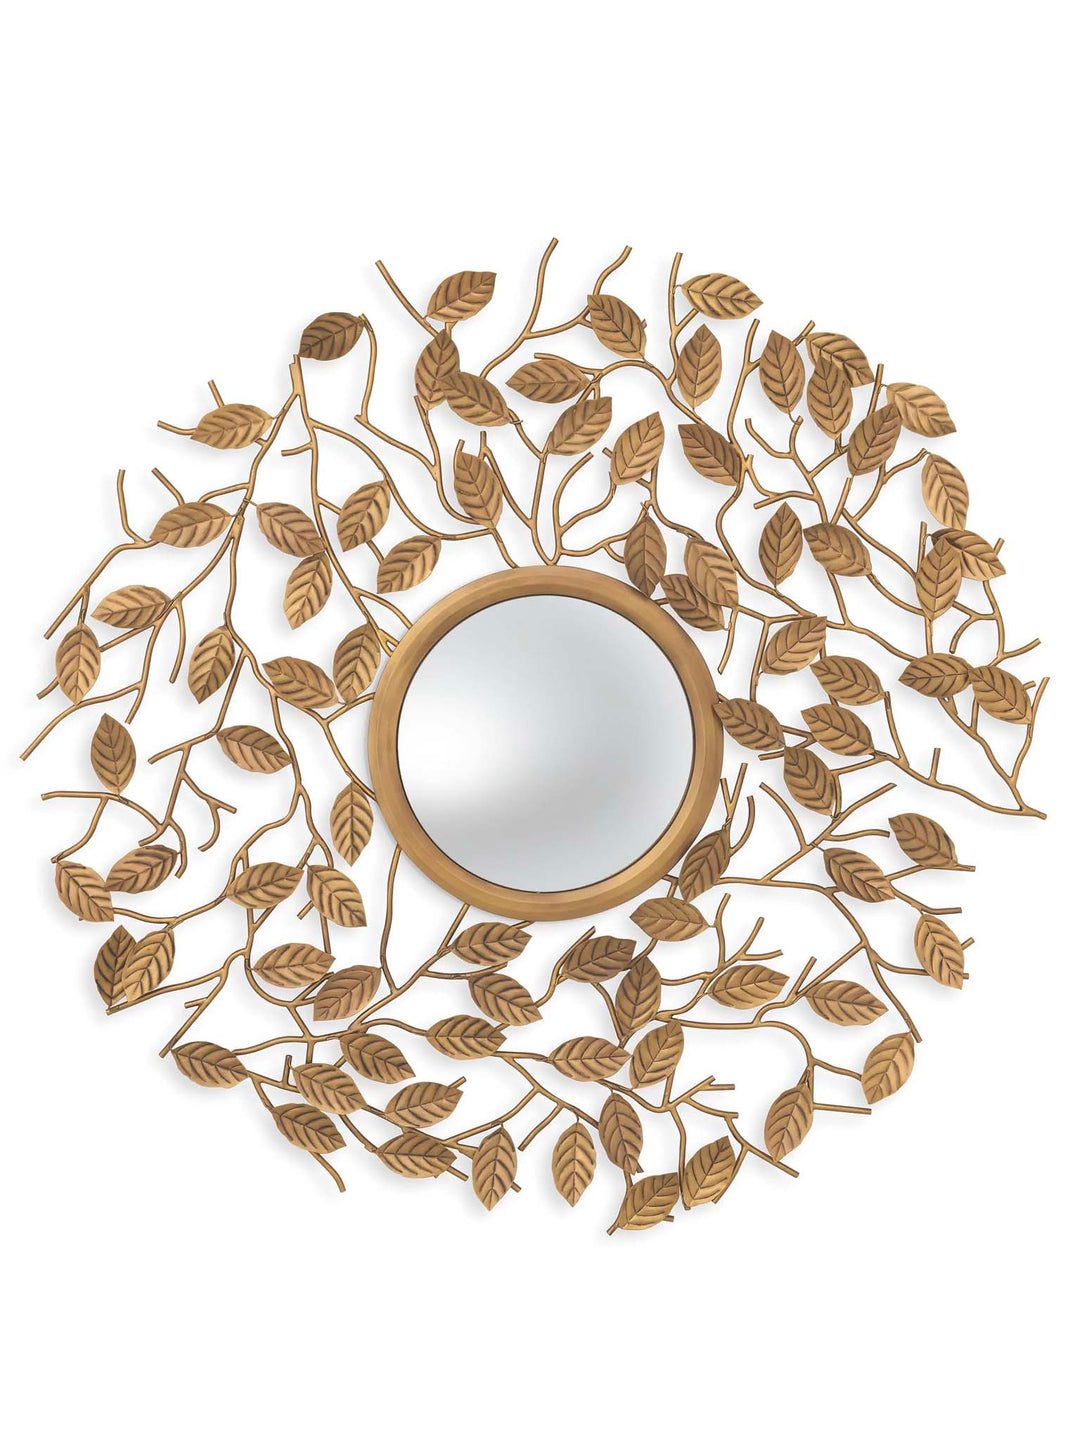 Antique gold leaf design mirror large 